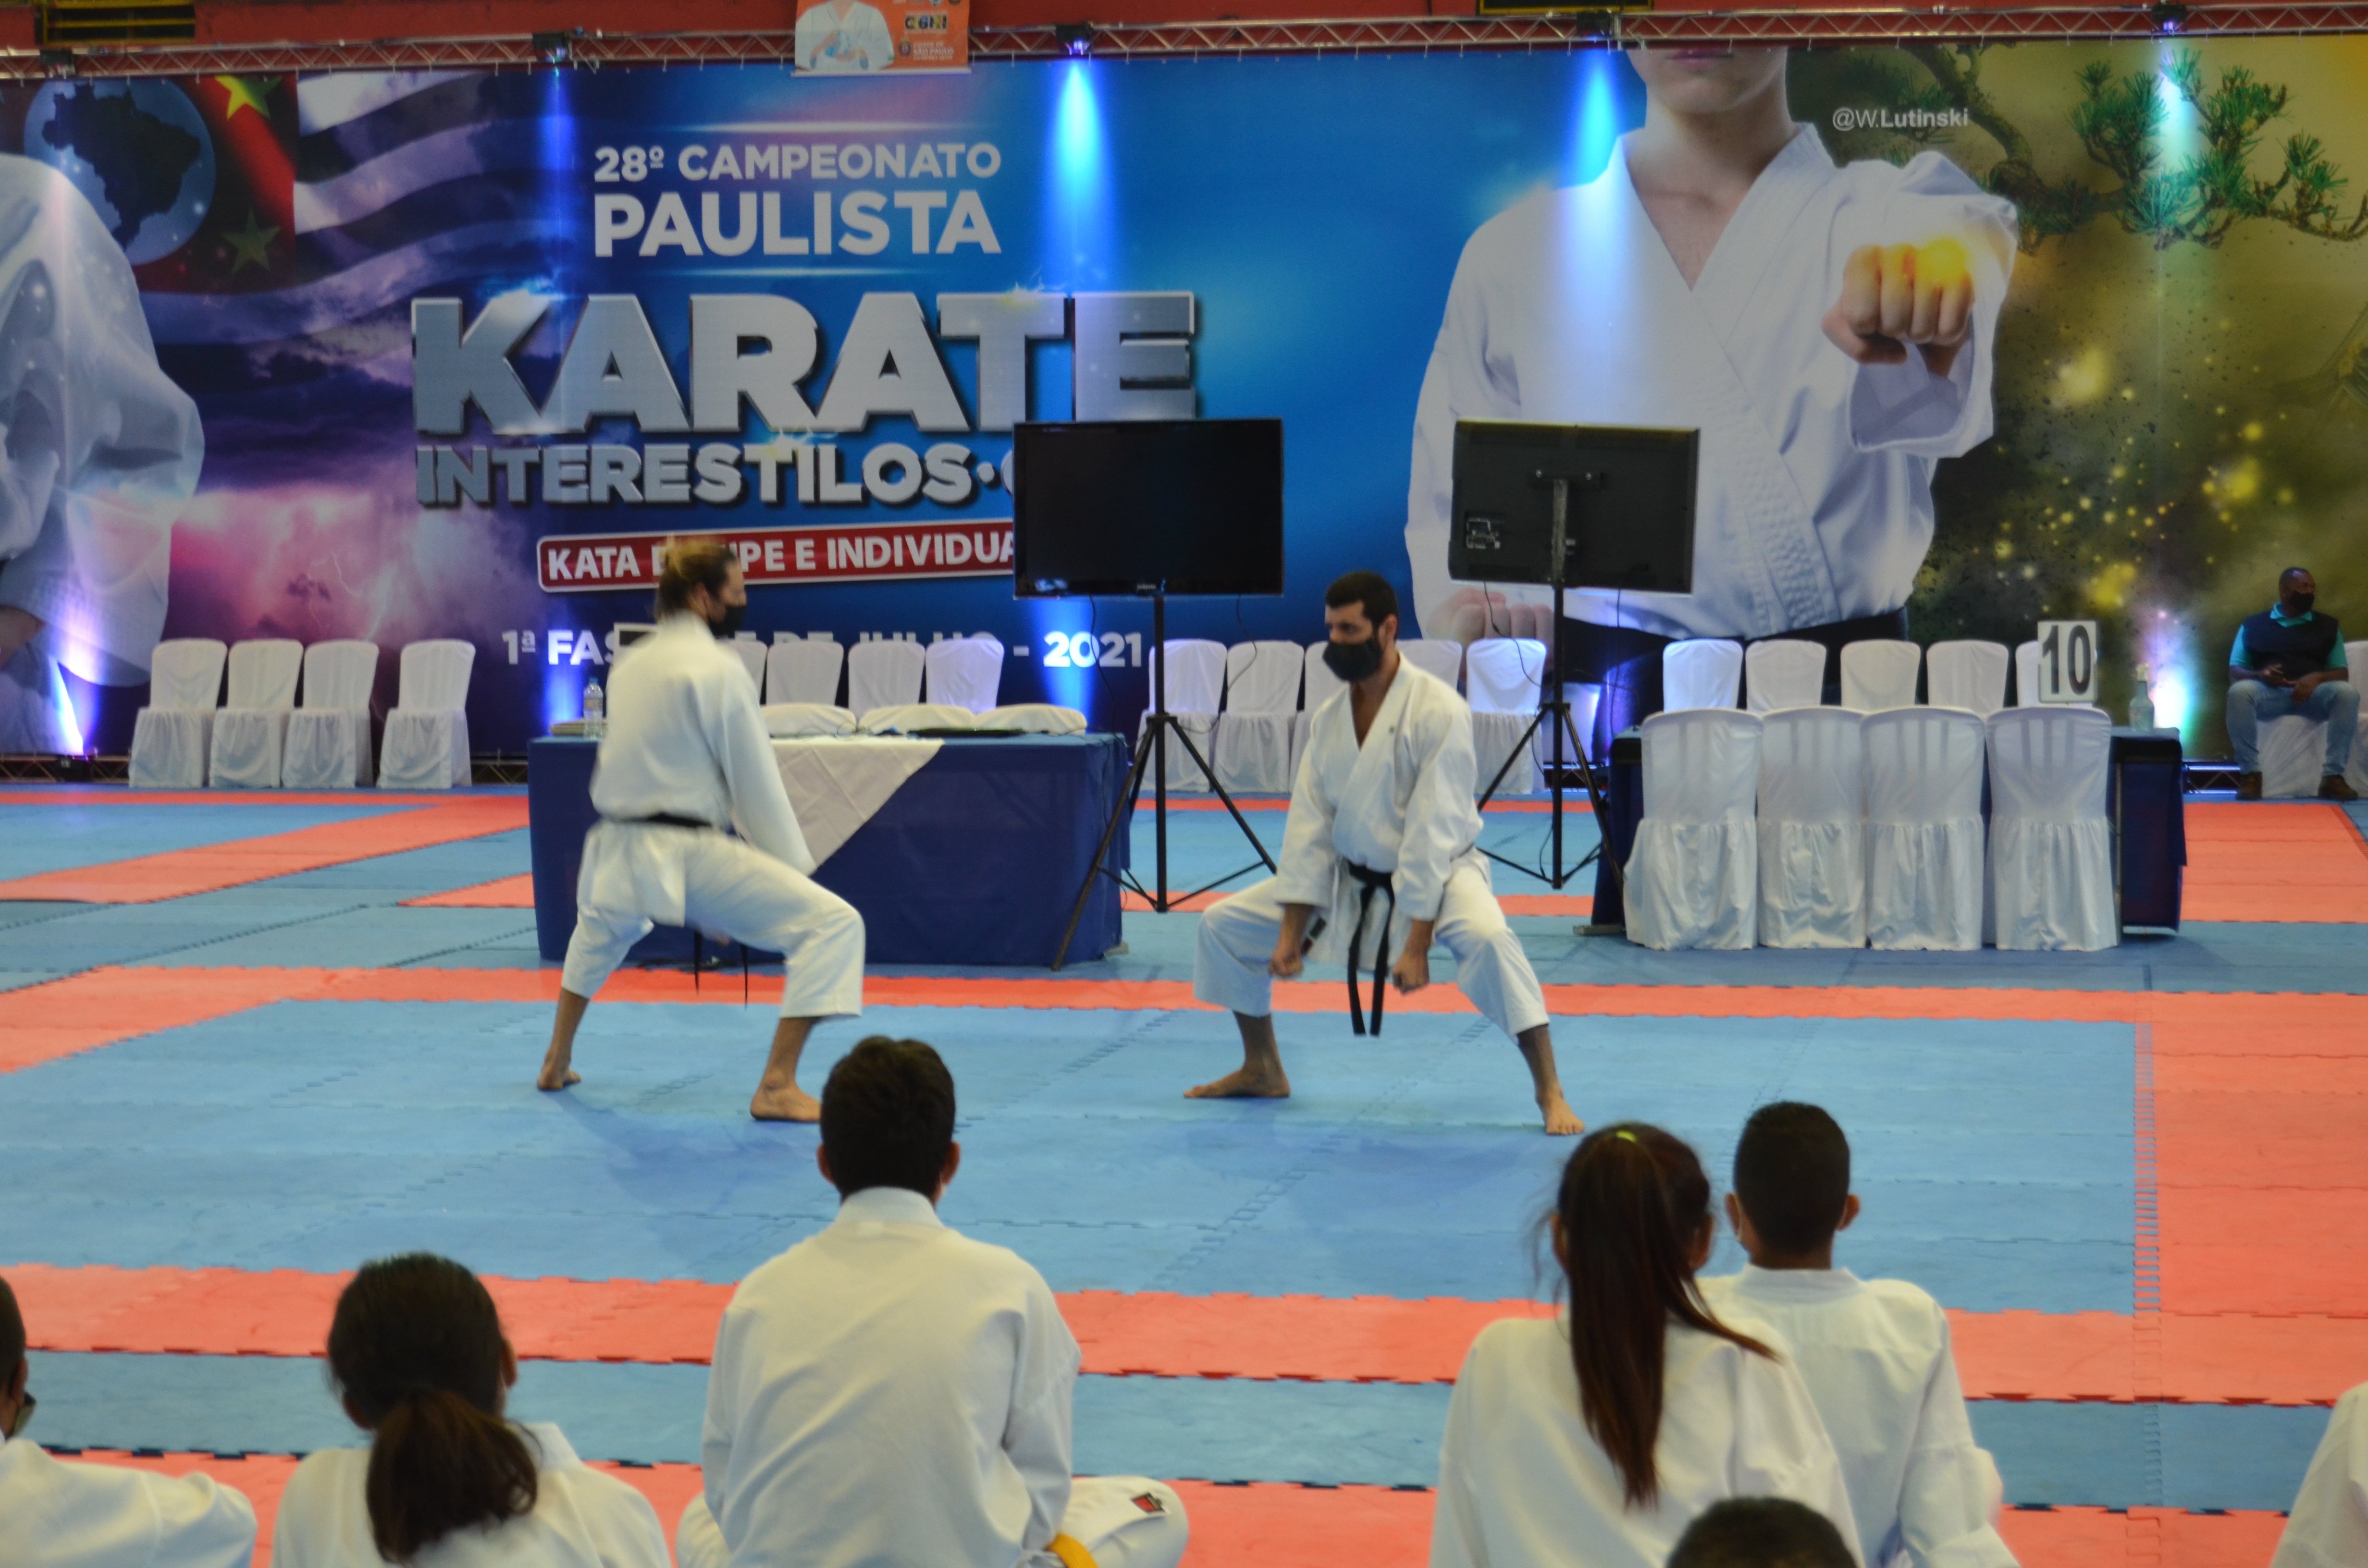 Imagem de uma apresentação no 28º Campeonato de Karate interestilos.